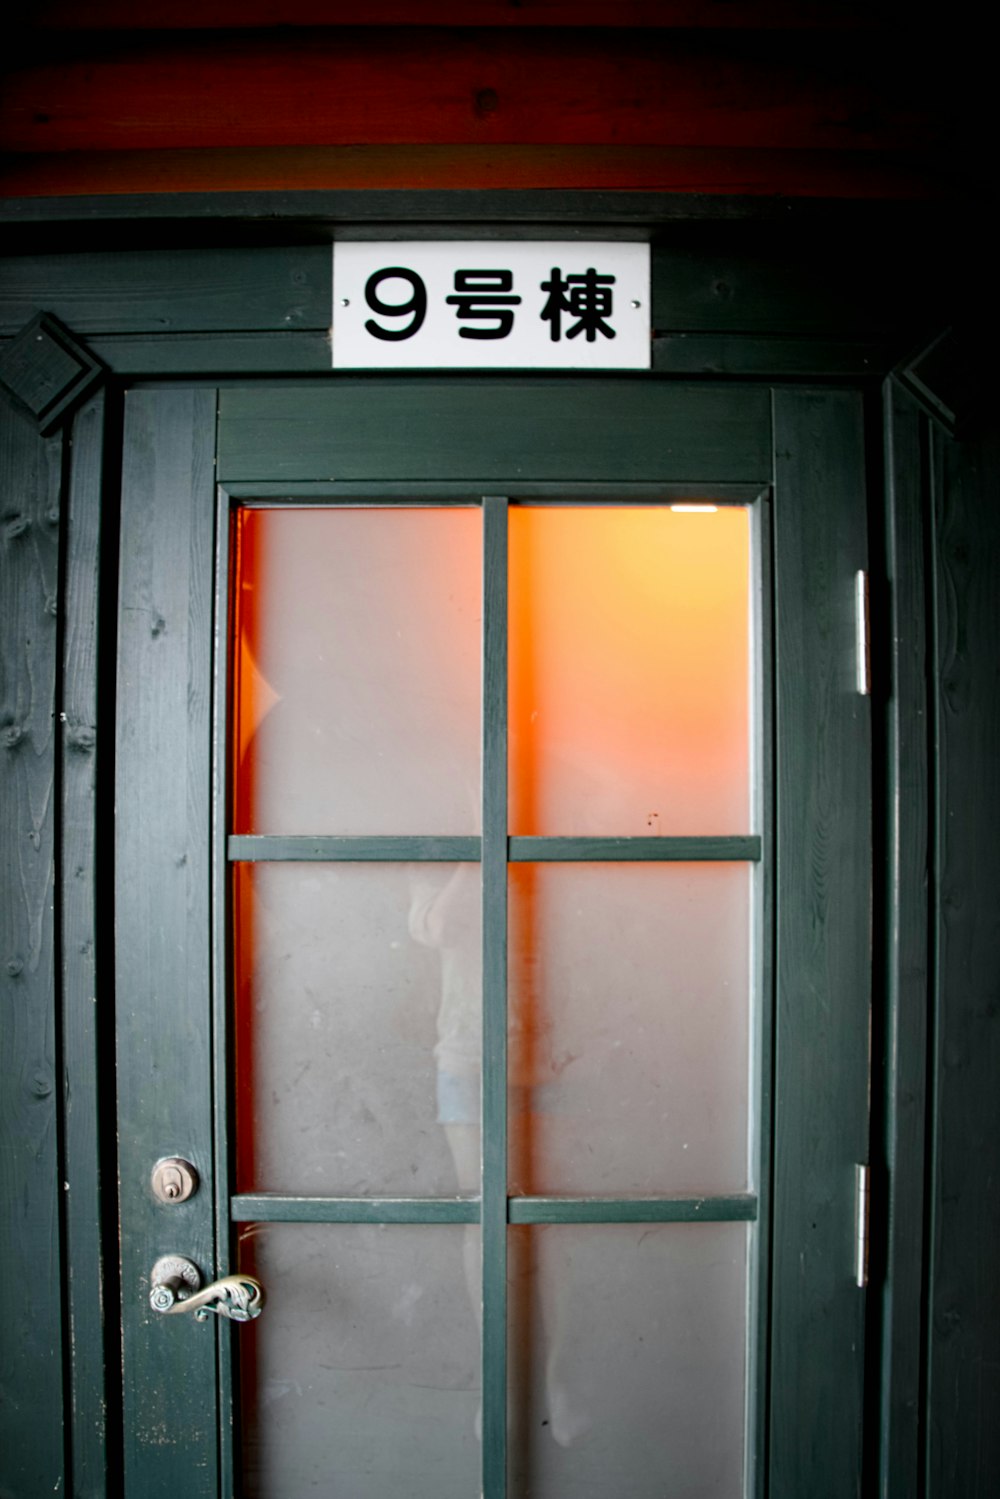 Porte vitrée en bois avec cadre orange et blanc